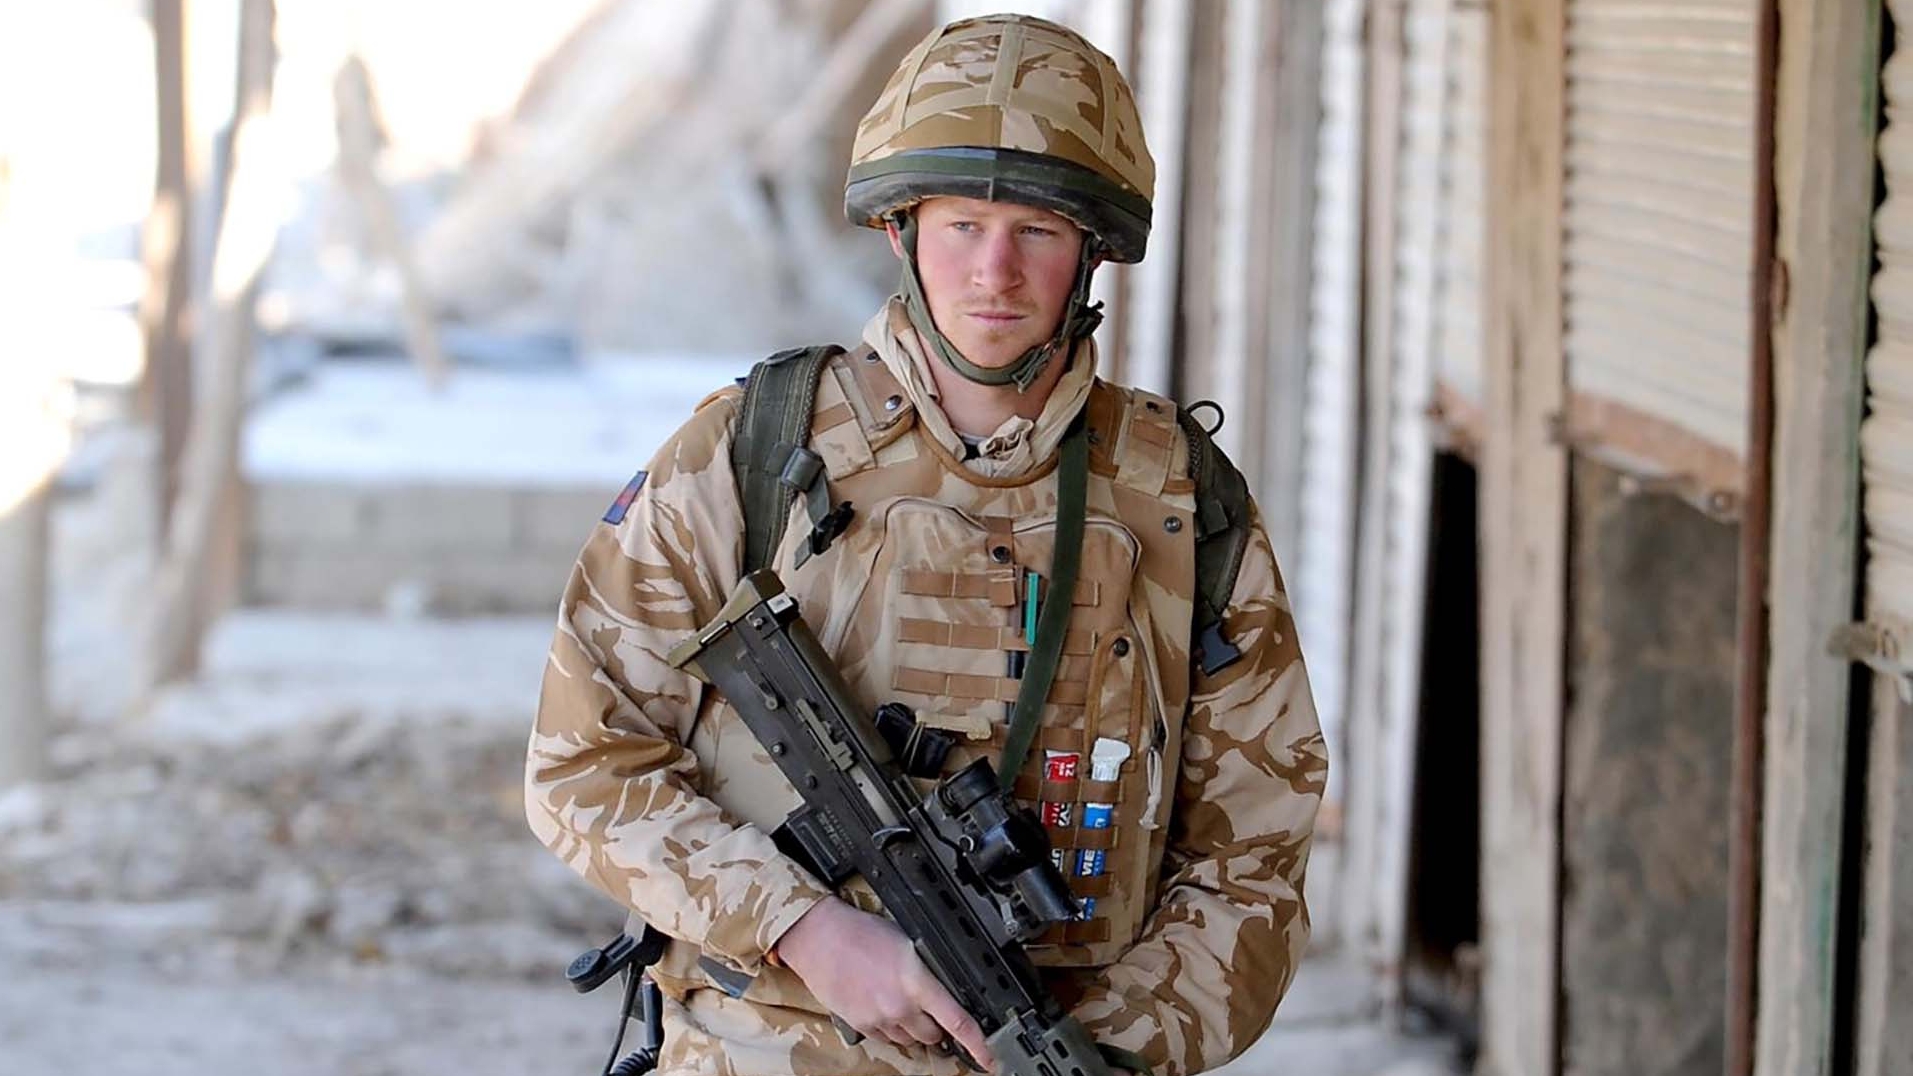 El ministro de Defensa británico criticó al príncipe Harry por revelar que mató a 25 talibanes: “Defraudó a su equipo”